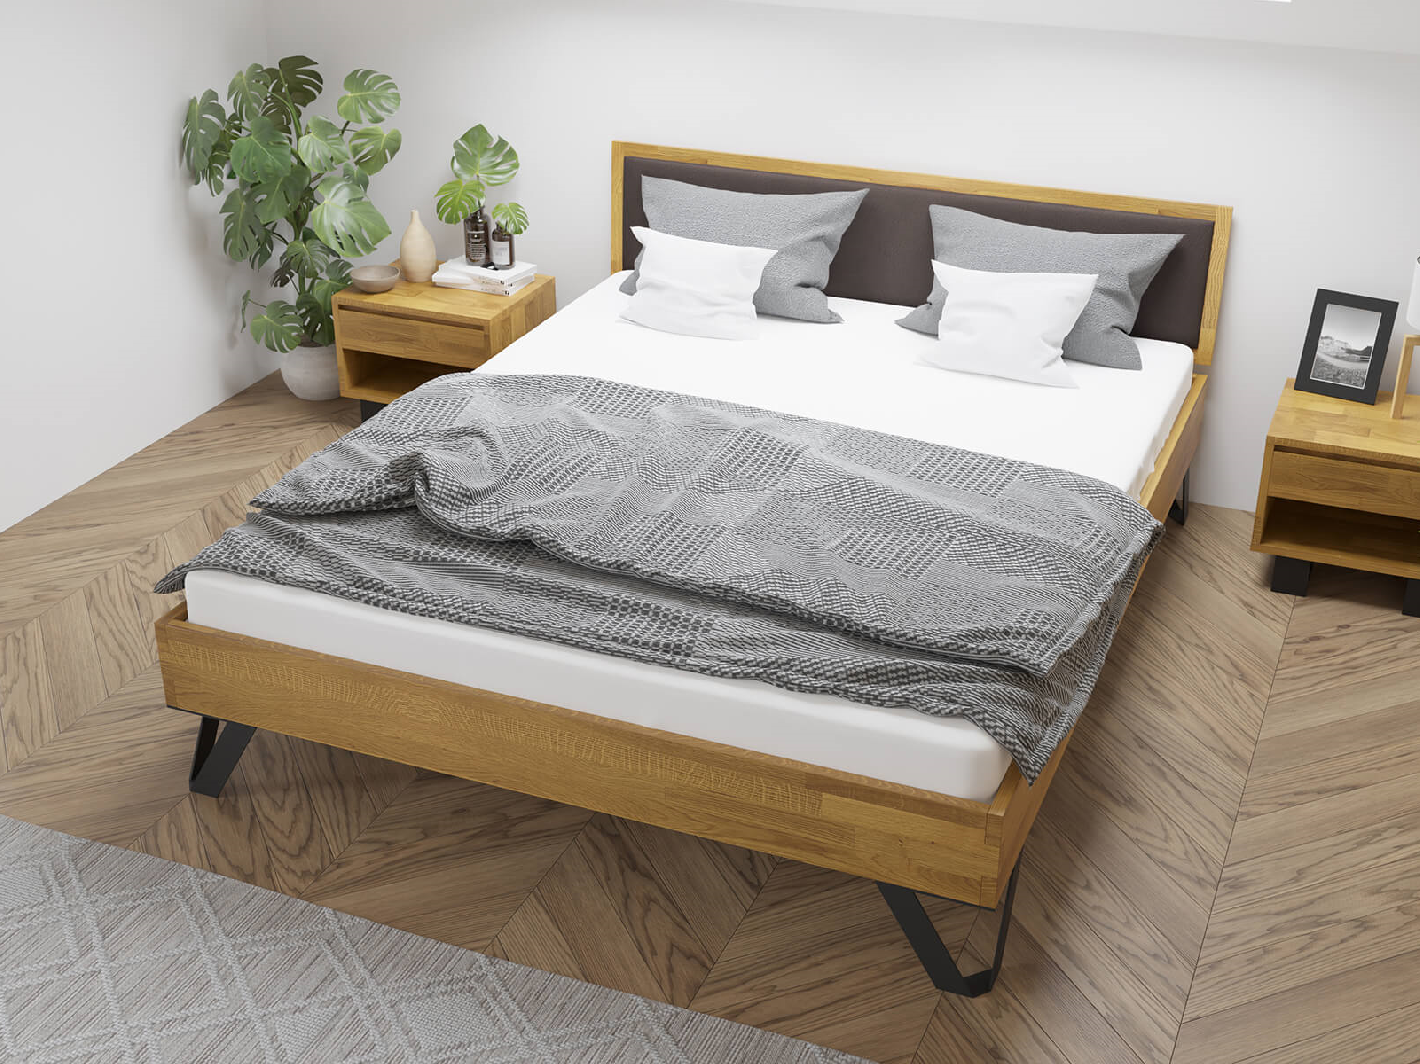 Dubová postel Tero Soft, čalouněná 180x200 cm, dub, masiv